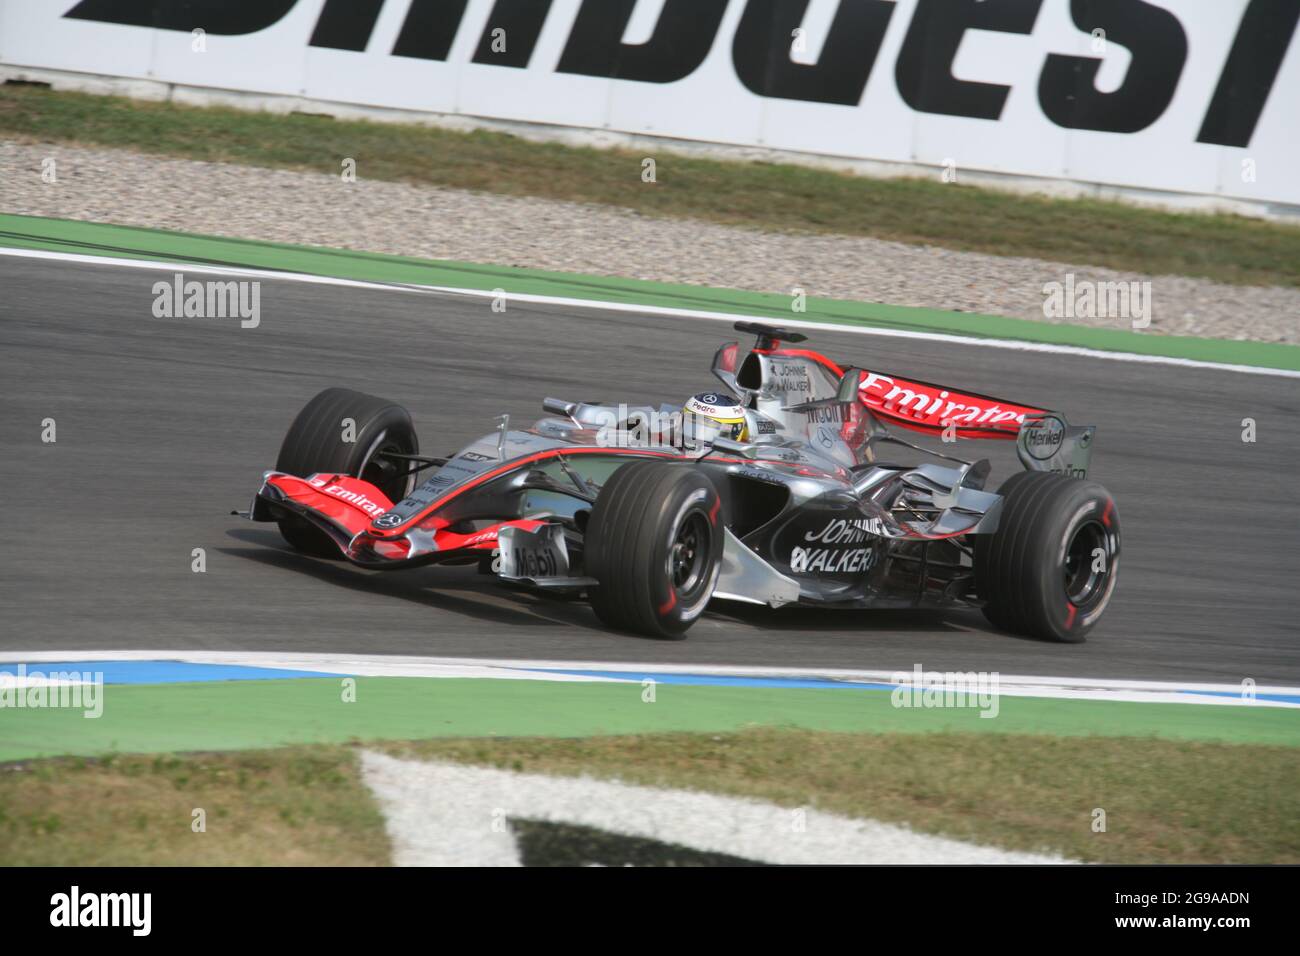 Pedro de la Rosa, ESP, McLaren Mercedes, F1, Grand Prix of Germany, Hockenheim, 2006 Stock Photo